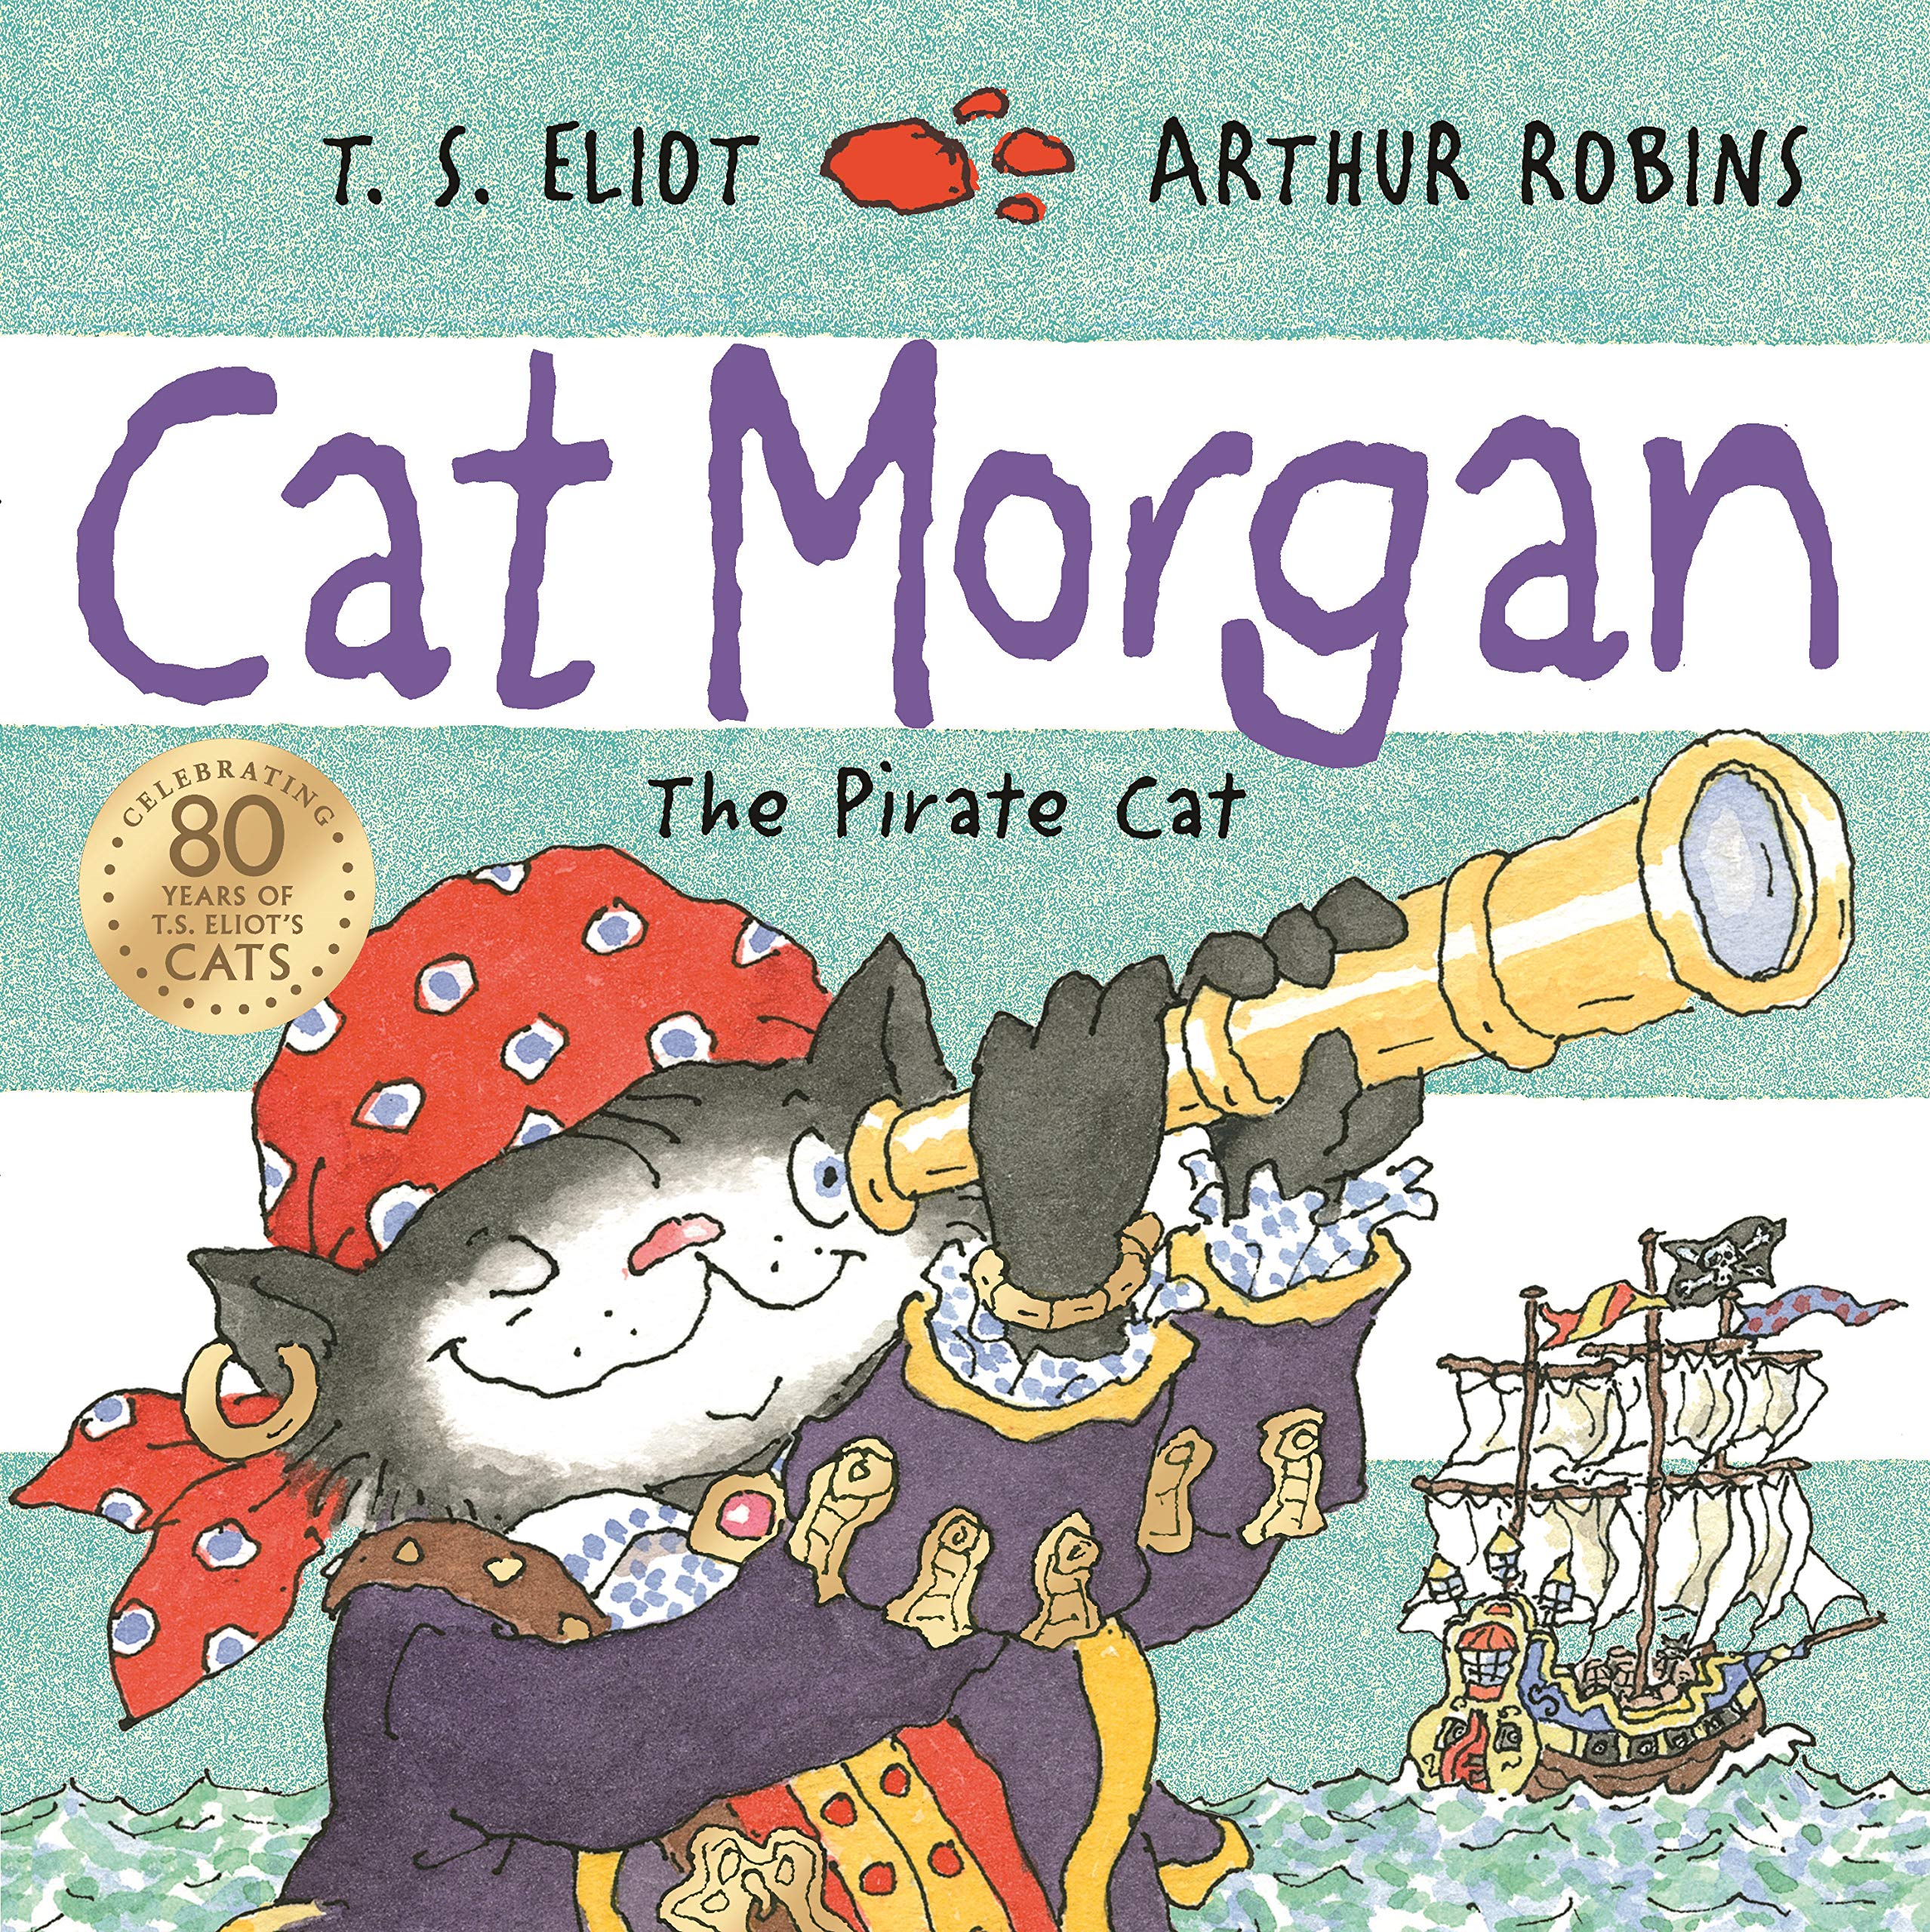 Cat Morgan